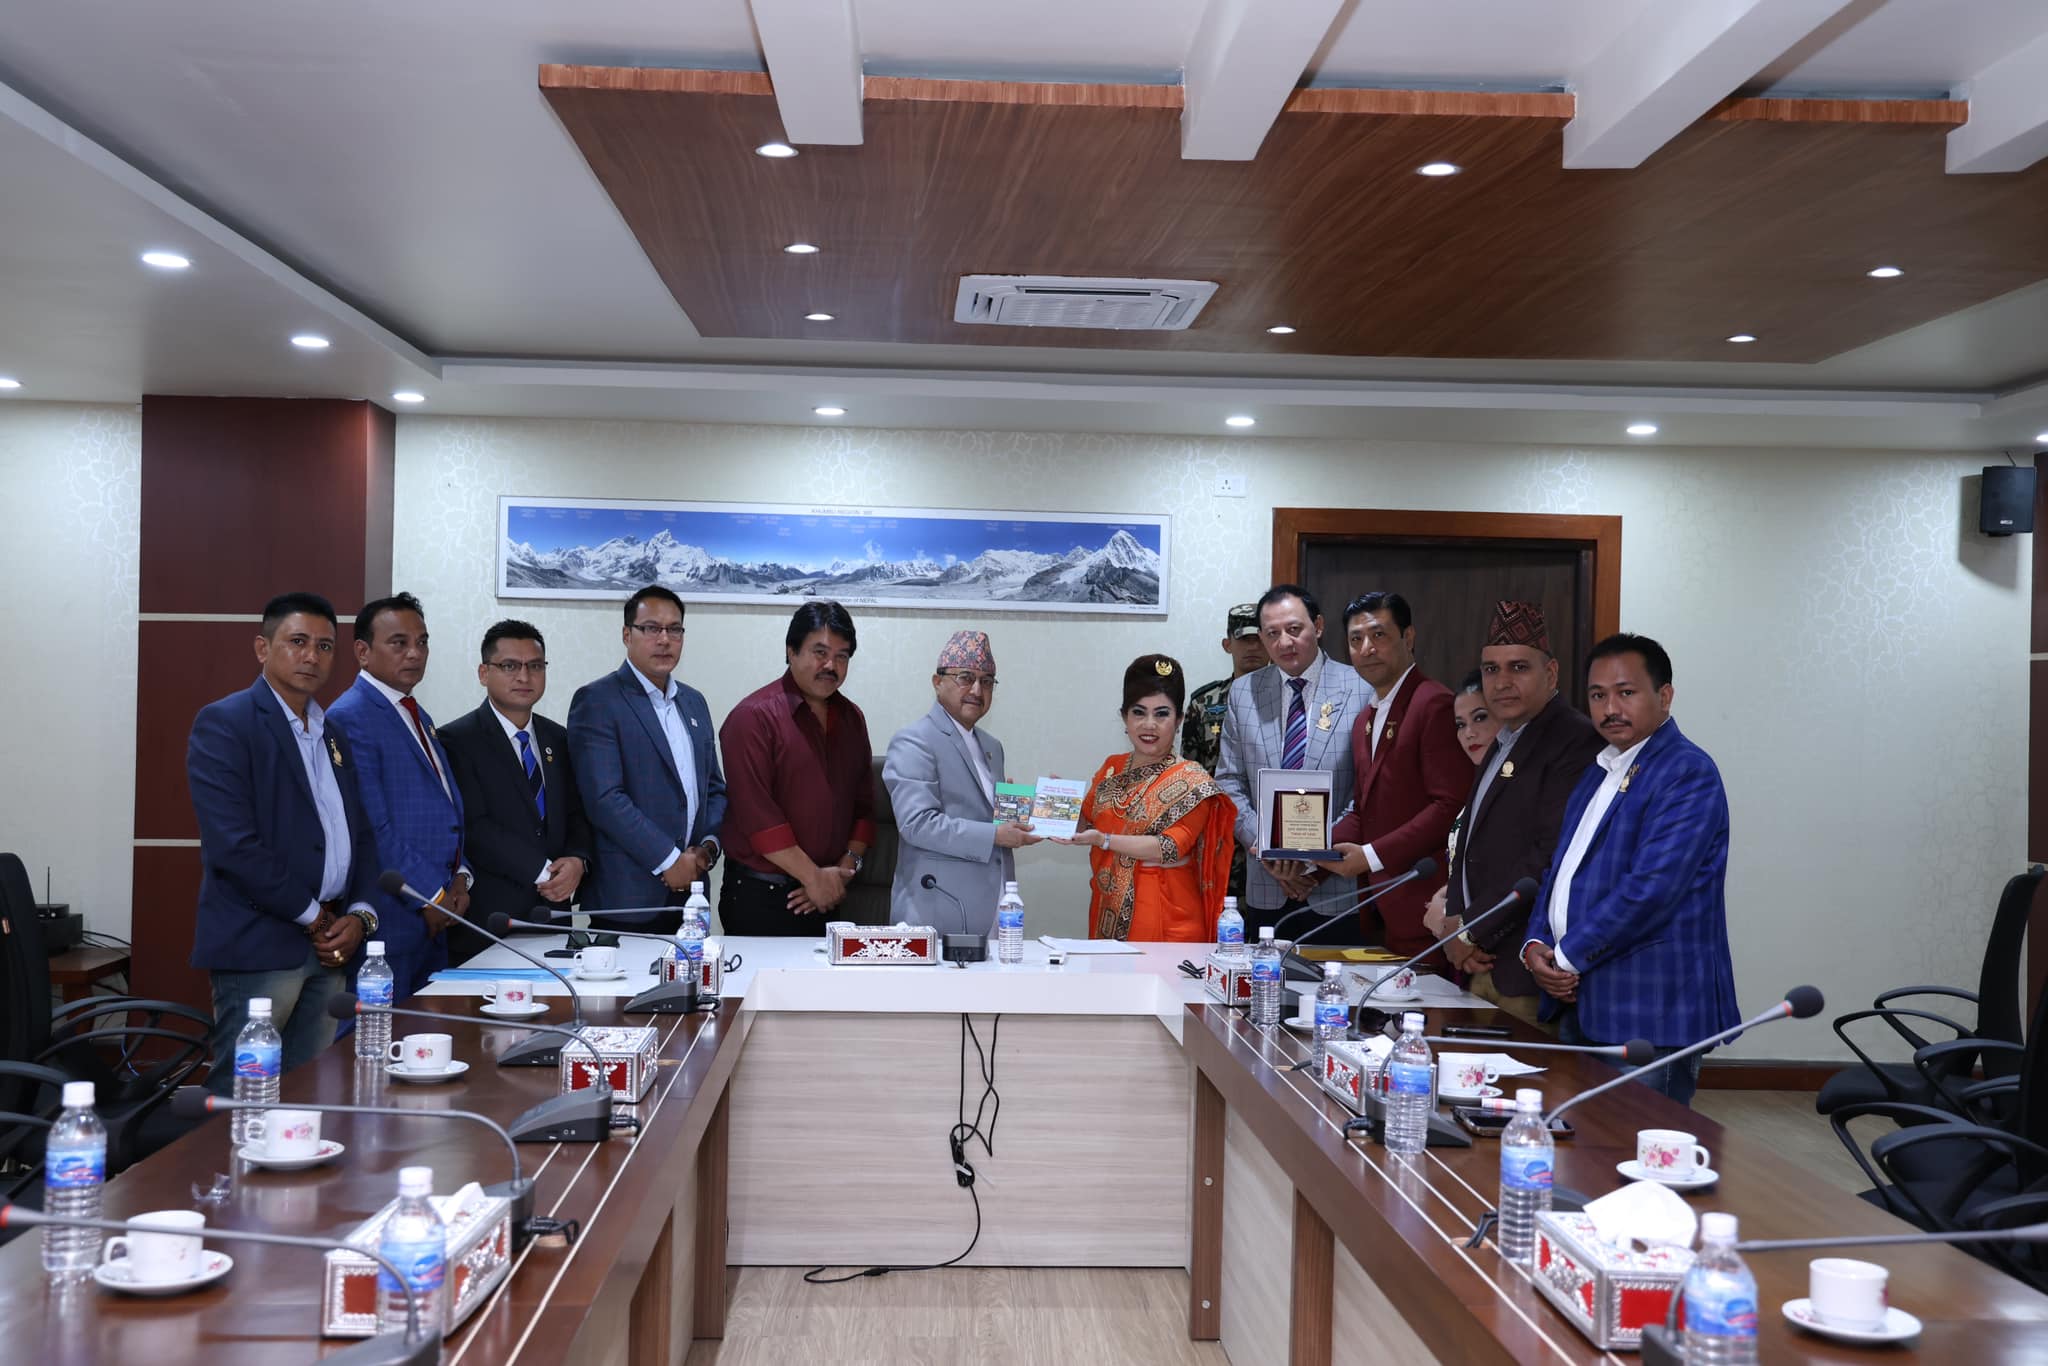 उपप्रधानमन्त्री खड्कासँग थाइल्यान्ड र म्यान्मारका नेपालीहरूको भेट